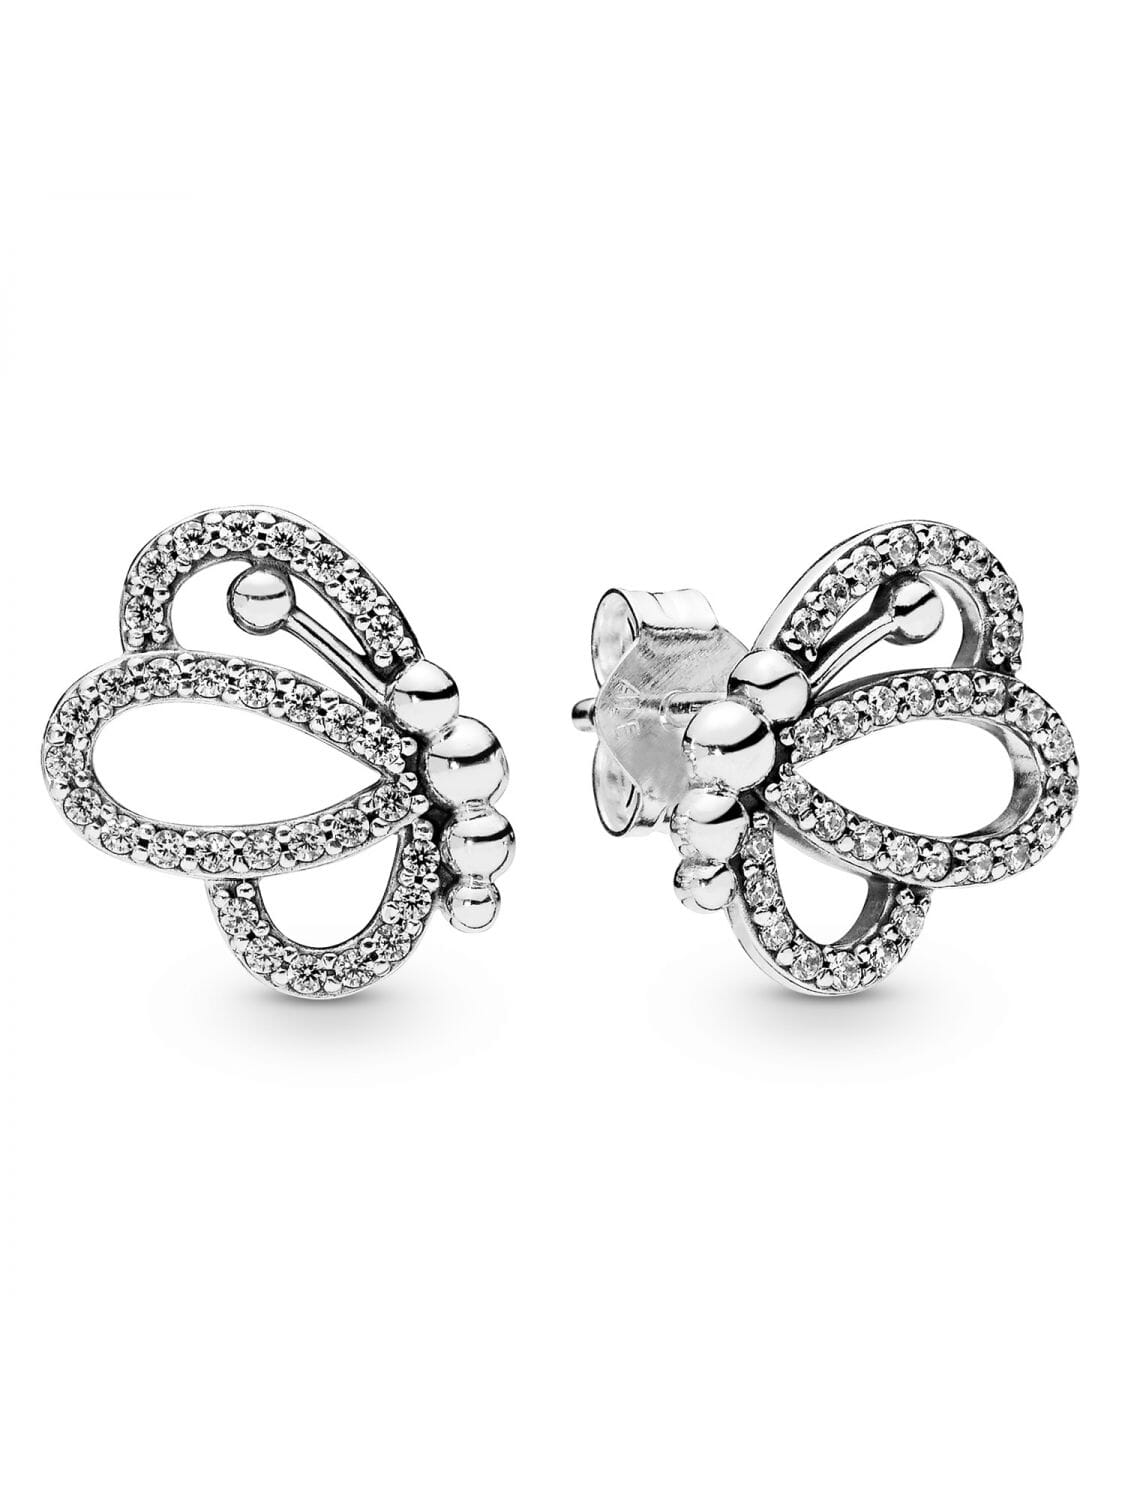 Shimmer Butterfly Earrings Sterling Silver 925 